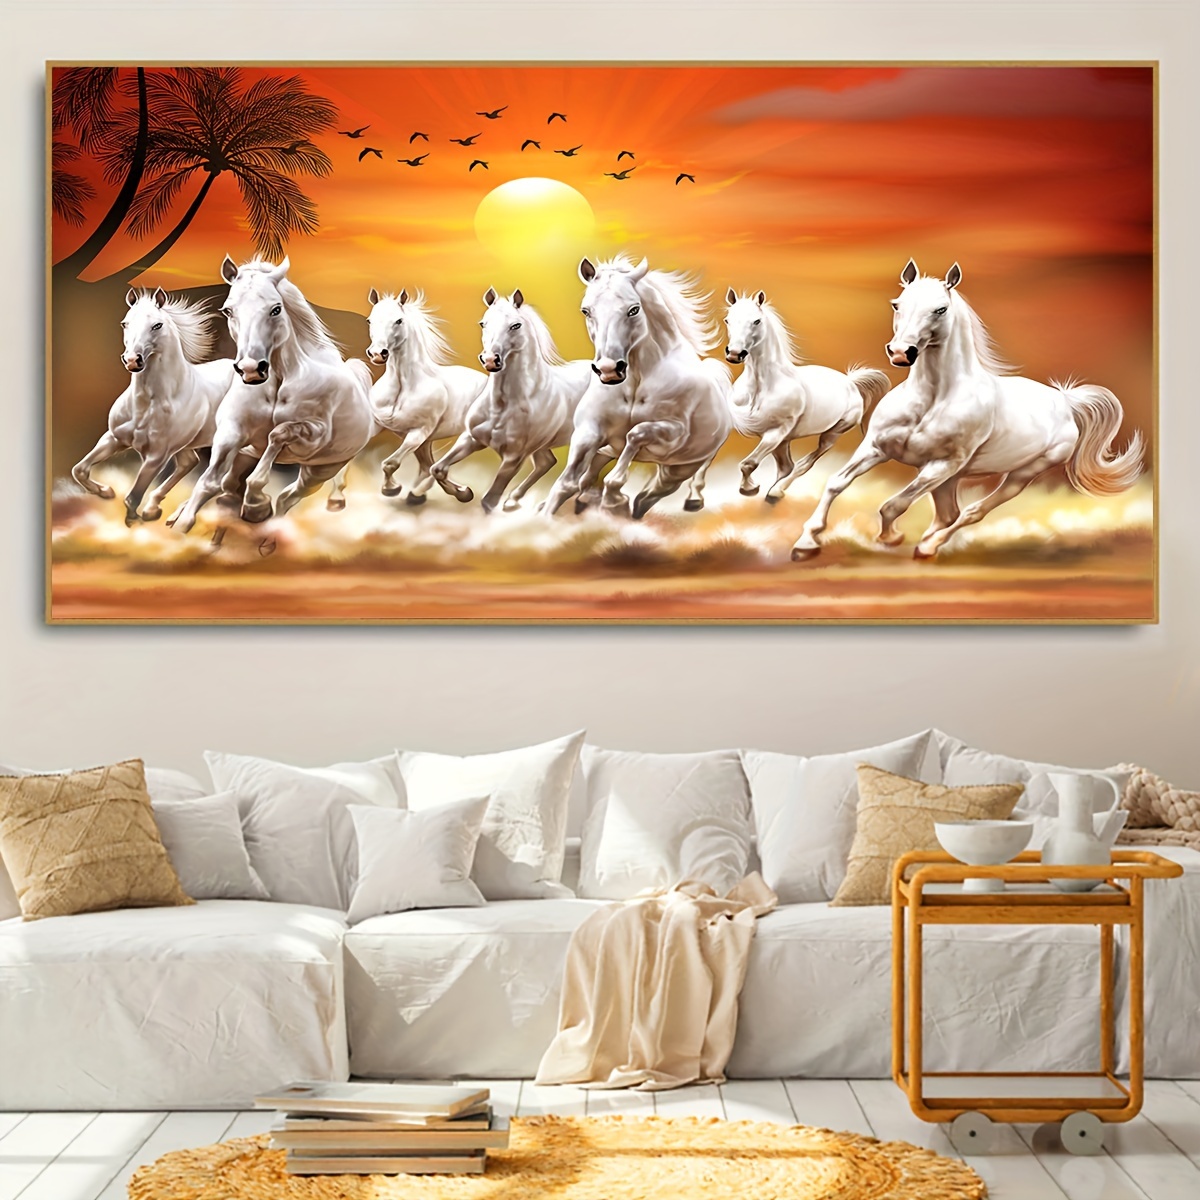 

1pc Unframed Canvas Poster, Modern Art, White Horse Poster, Ideal Gift For Bedroom Living Room Corridor, Wall Art, Wall Decor, Winter Decor, Room Decoration